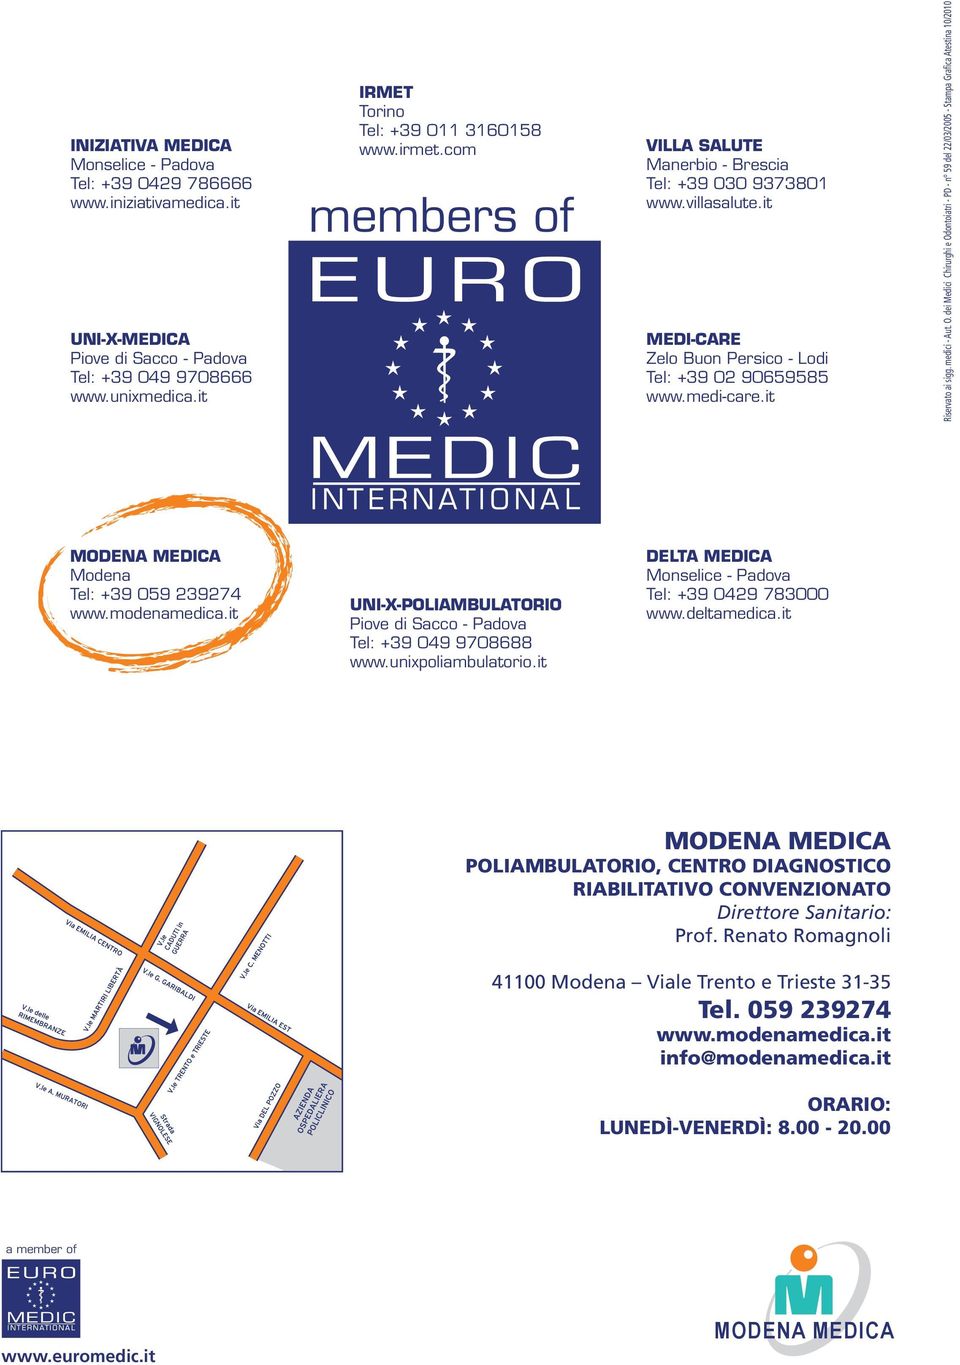 O. dei Medici Chirurghi e Odontoiatri - PD - n 59 del 22/03/2005 - Stampa Grafica Atestina 10/2010 Modena Tel: +39 059 239274 www.modenamedica.